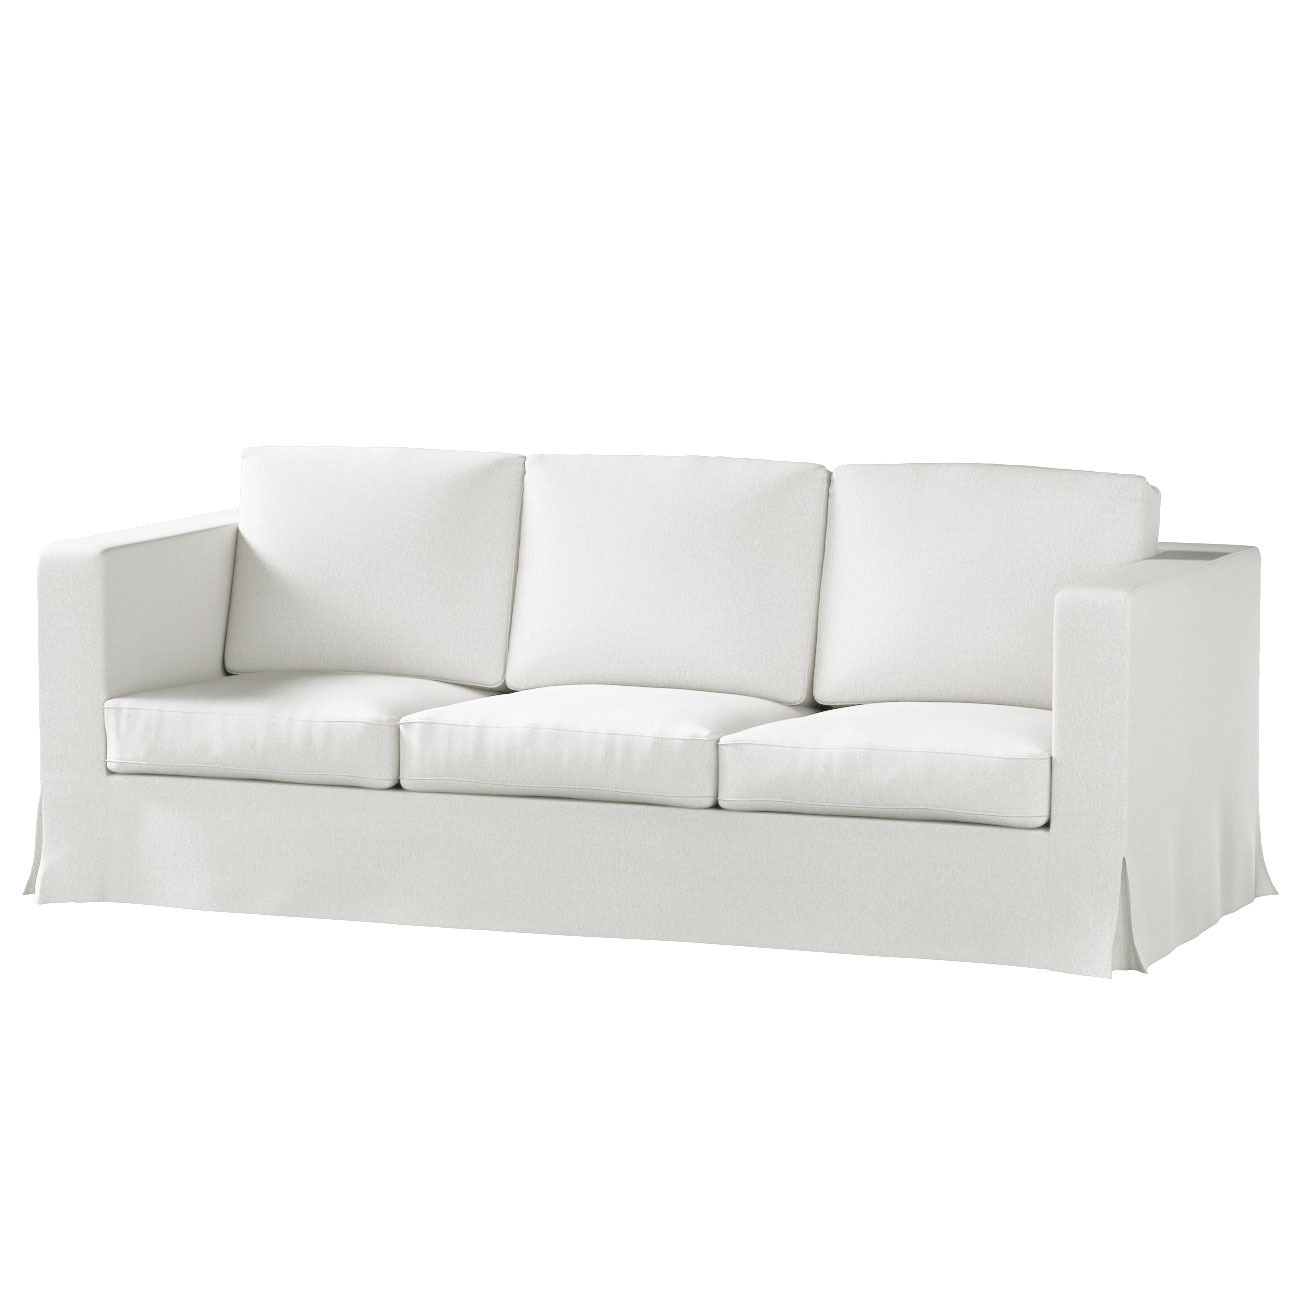 Bezug für Karlanda 3-Sitzer Sofa nicht ausklappbar, lang, creme, Bezug für günstig online kaufen